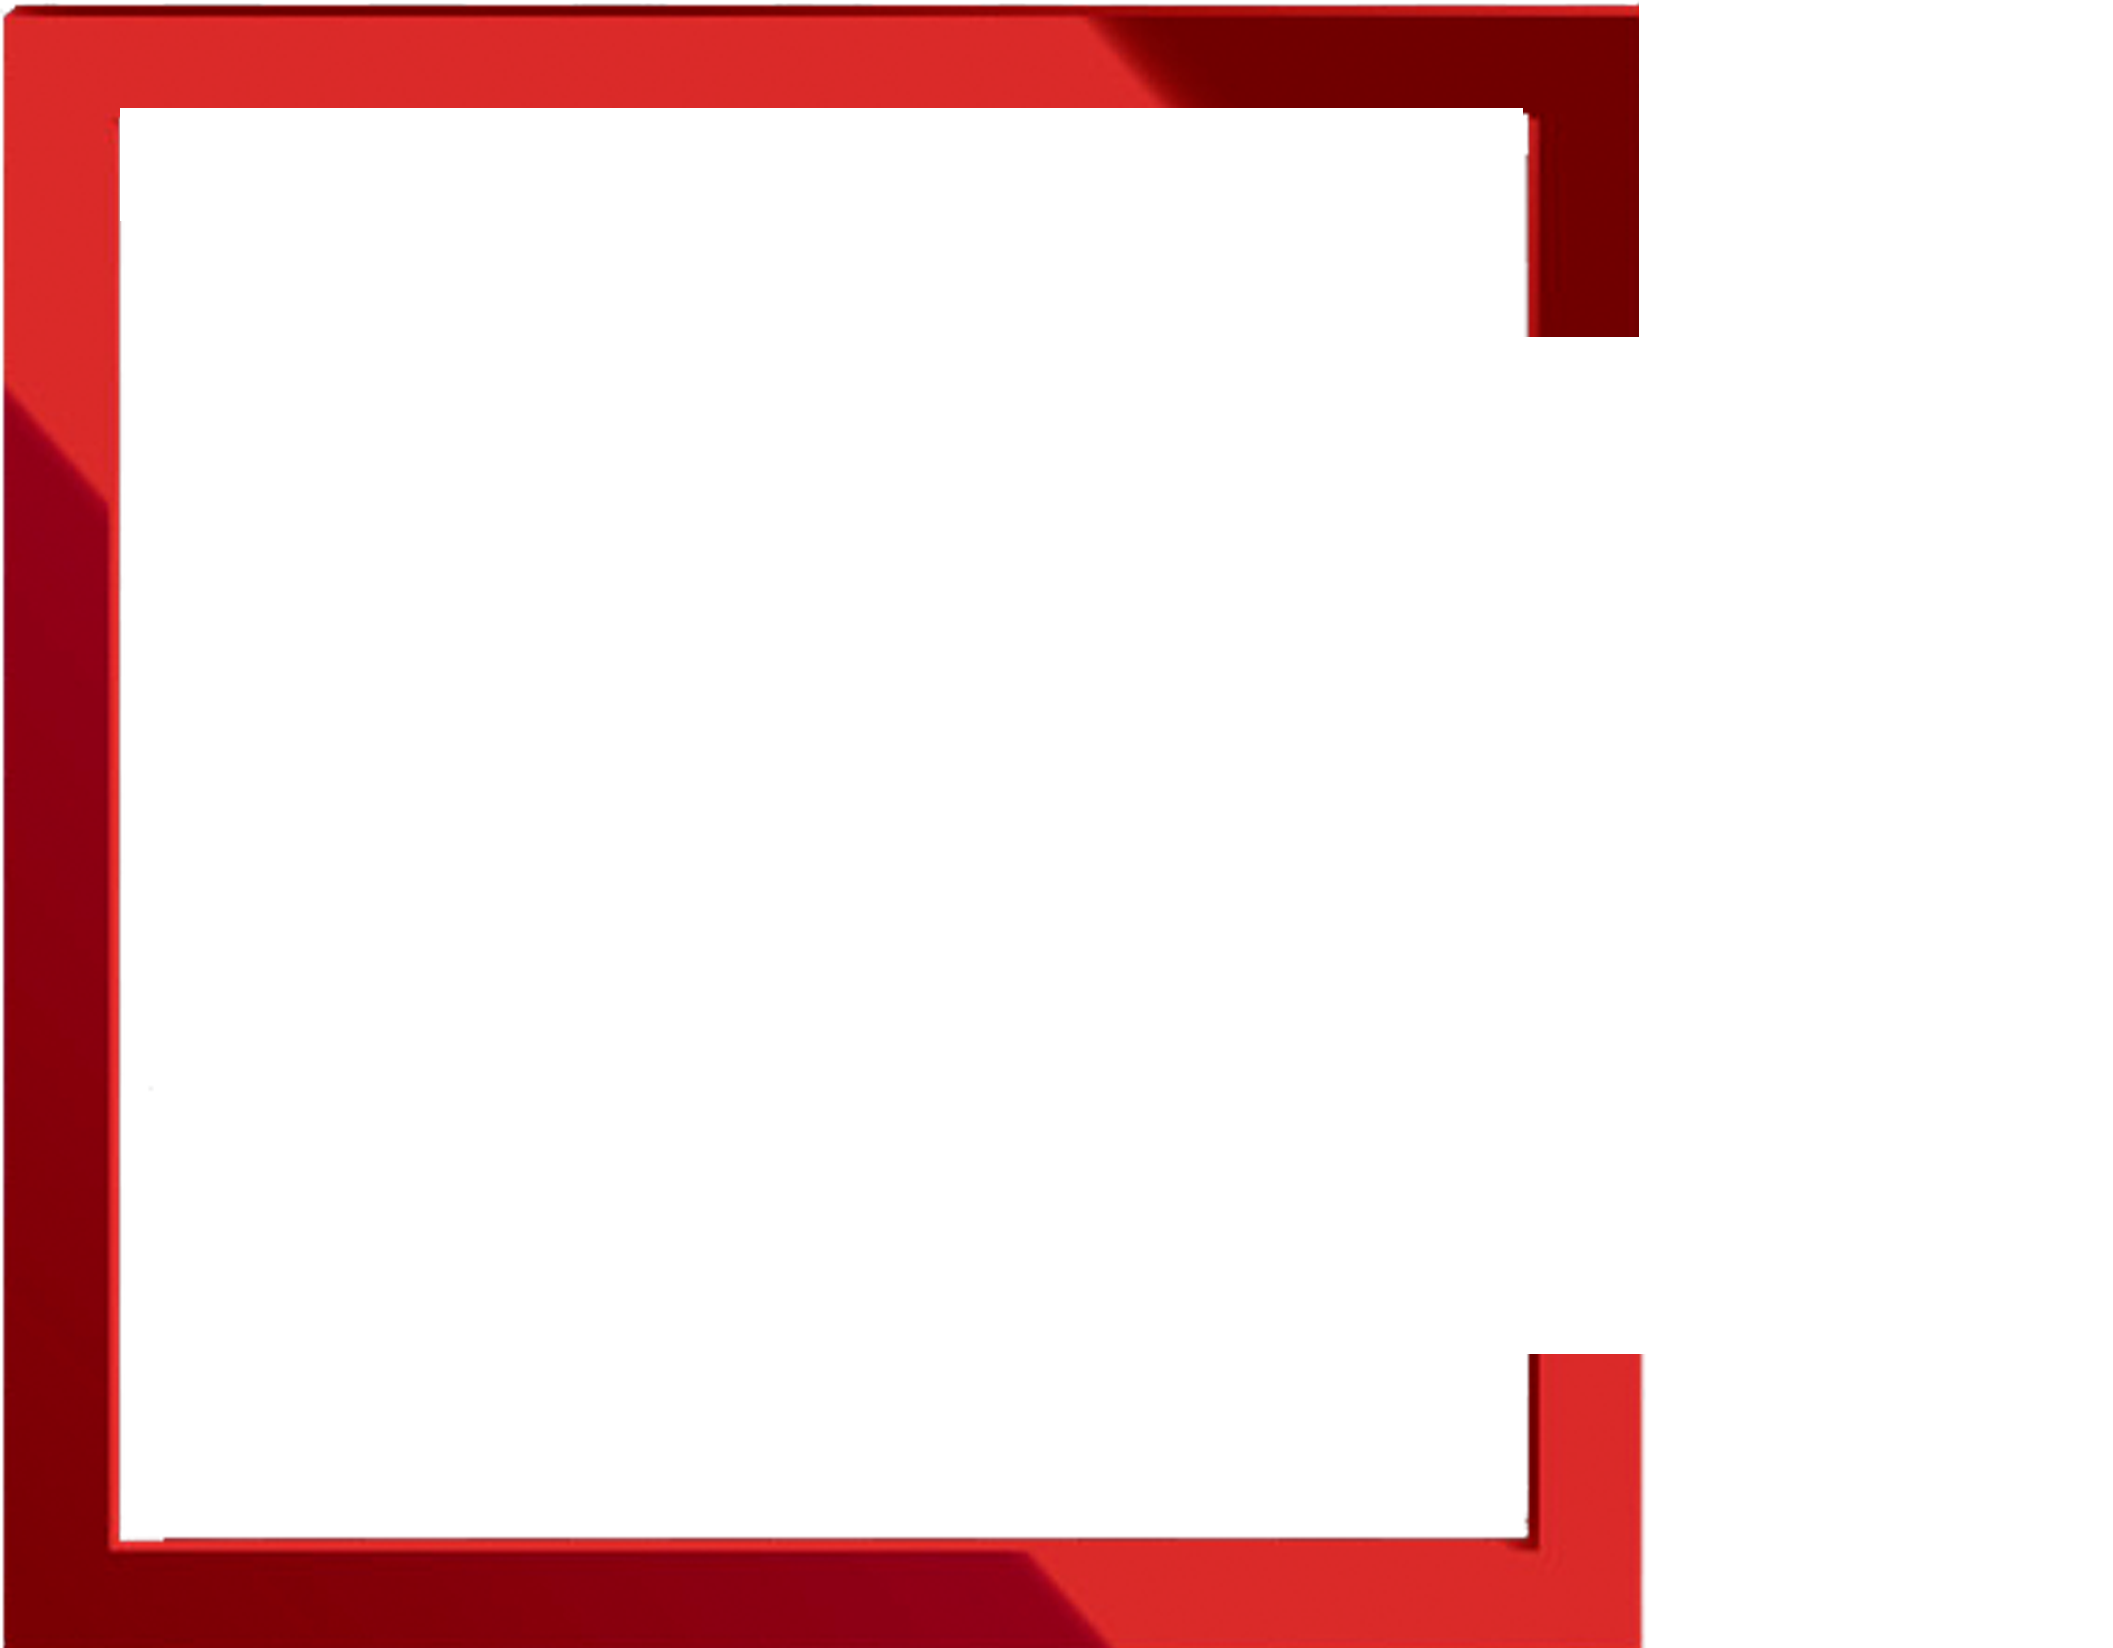 Expoboxes